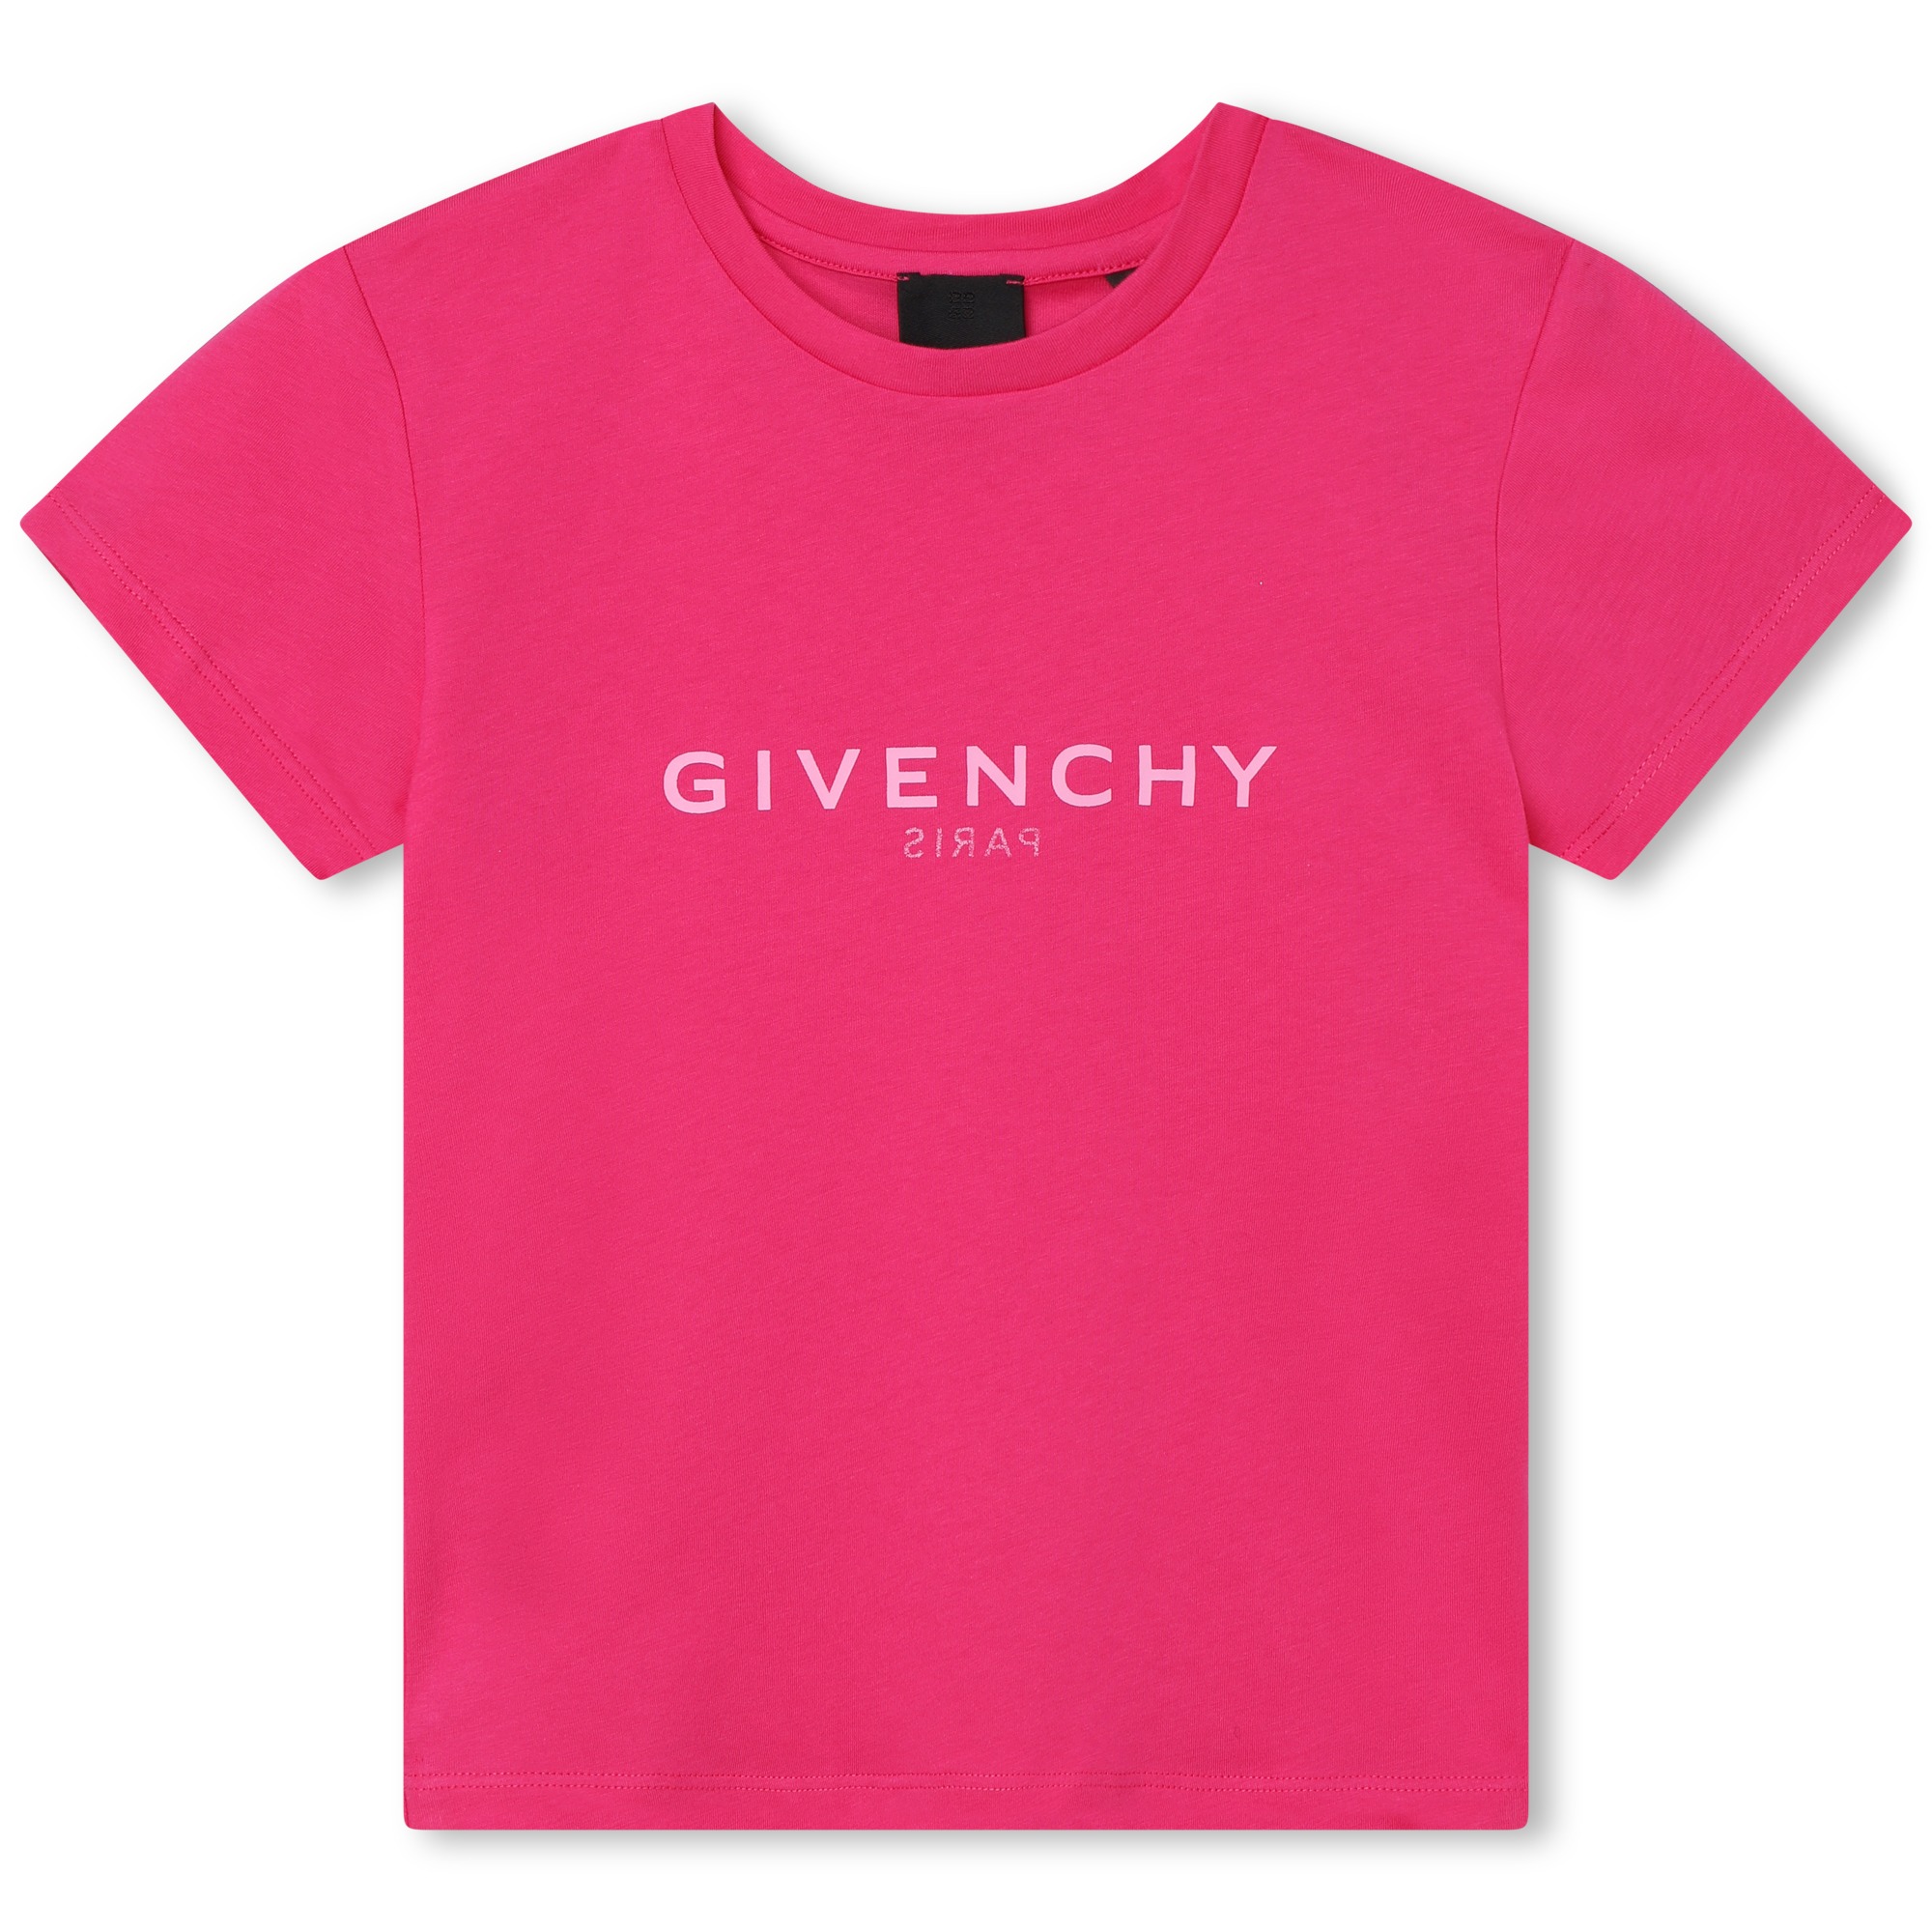 Camiseta con estampado GIVENCHY para NIÑA